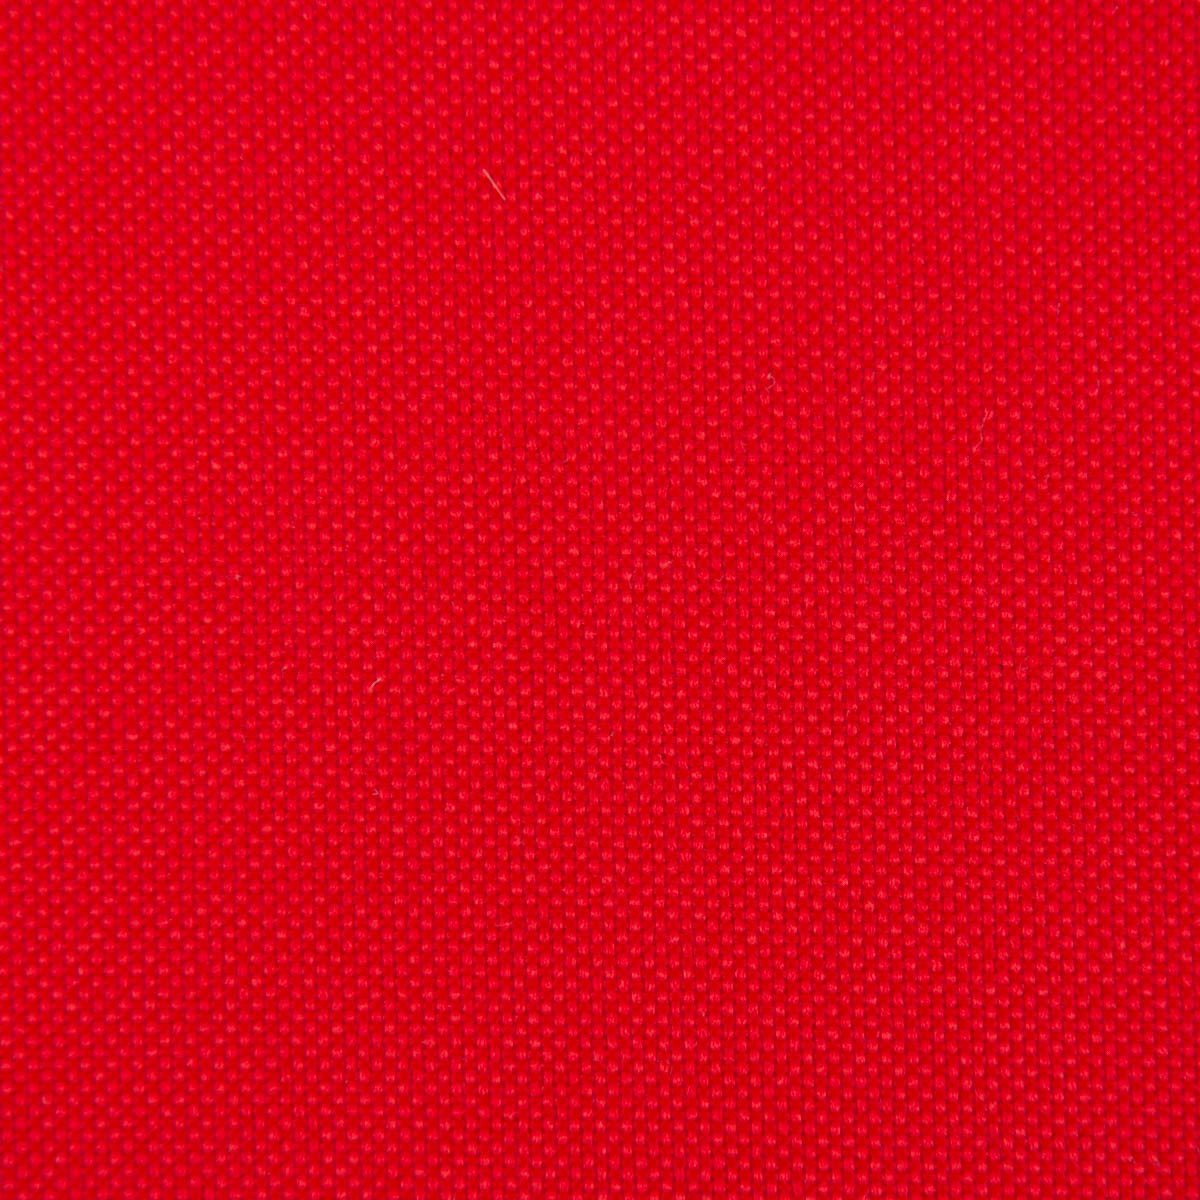 SCHÖNER LEBEN. Stoff Polyester Stoff Meterware PVC Coating wasserabweisend rot 1,5m Breite